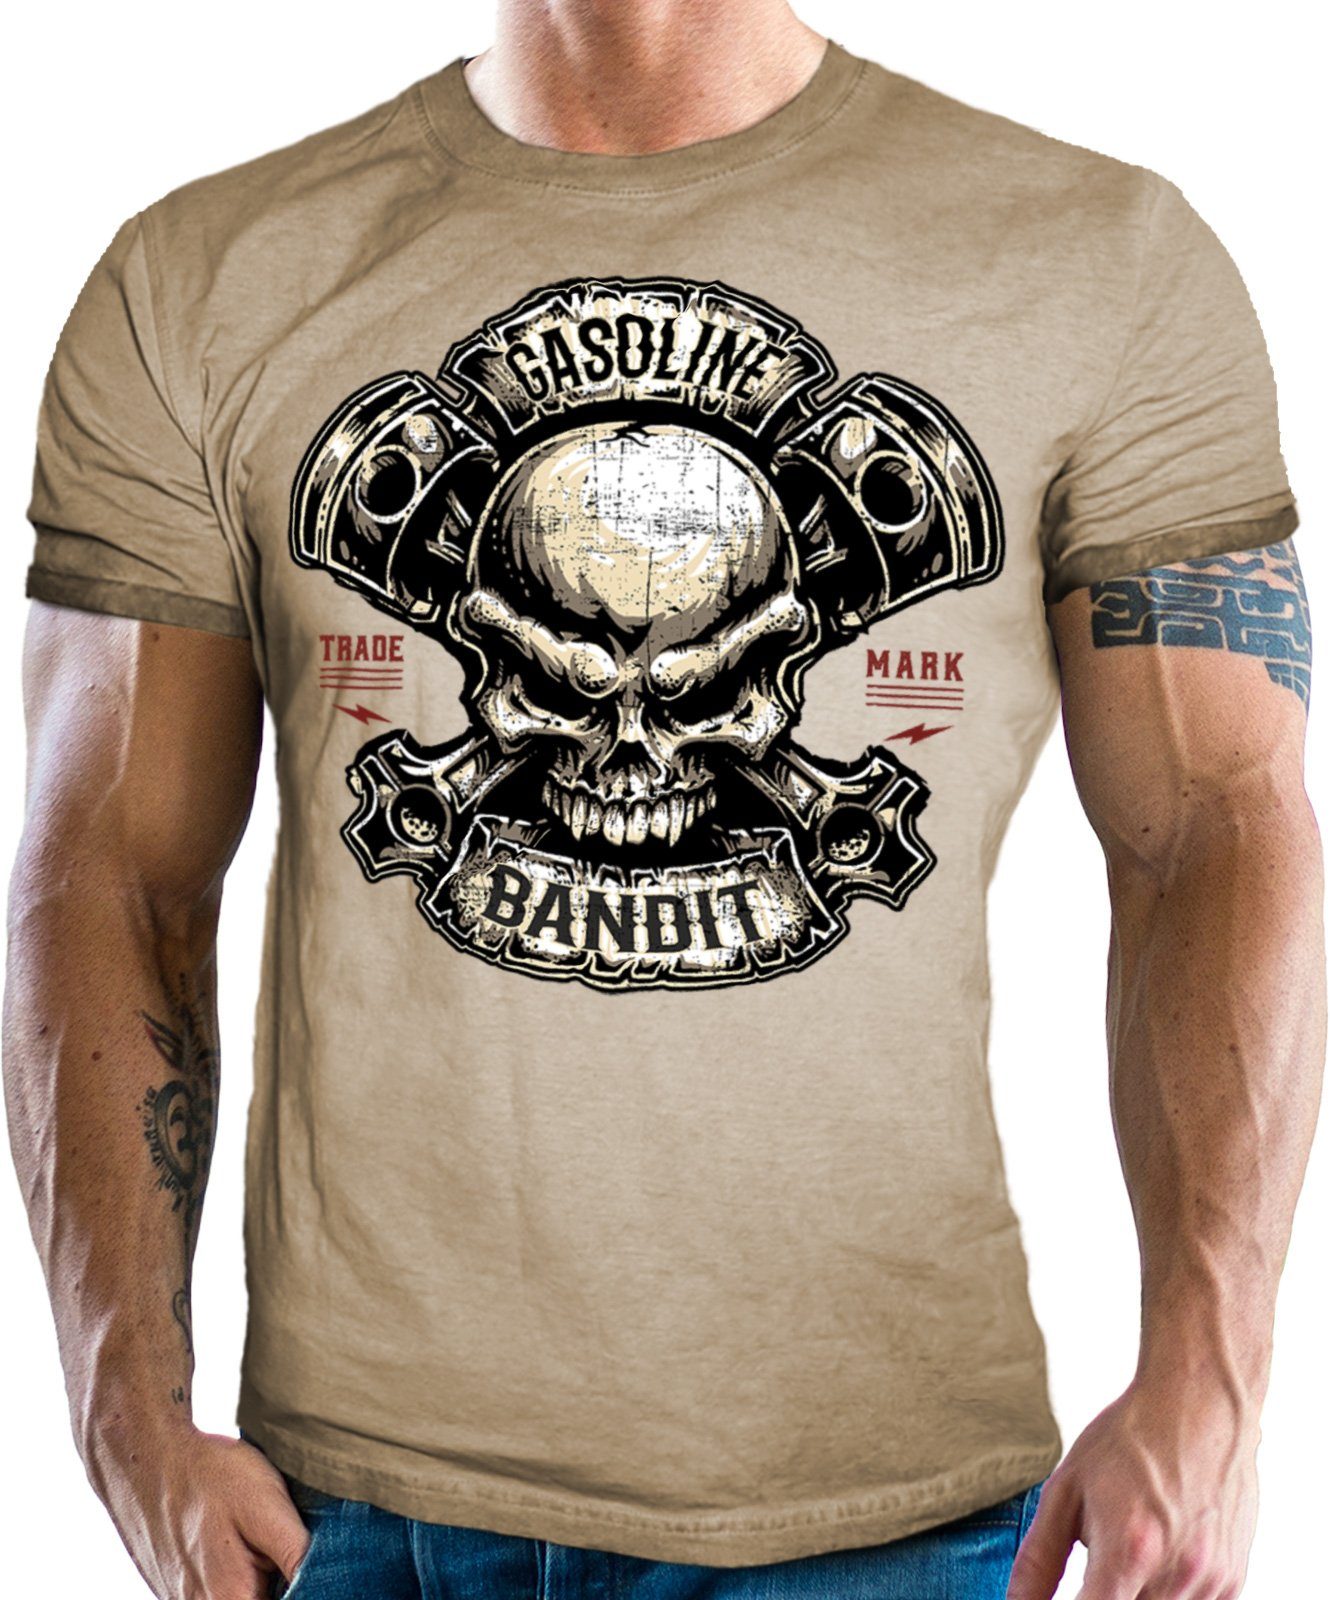 T-Shirt Skull Piston BANDIT® look washed GASOLINE in für Fans: Racer Biker sand